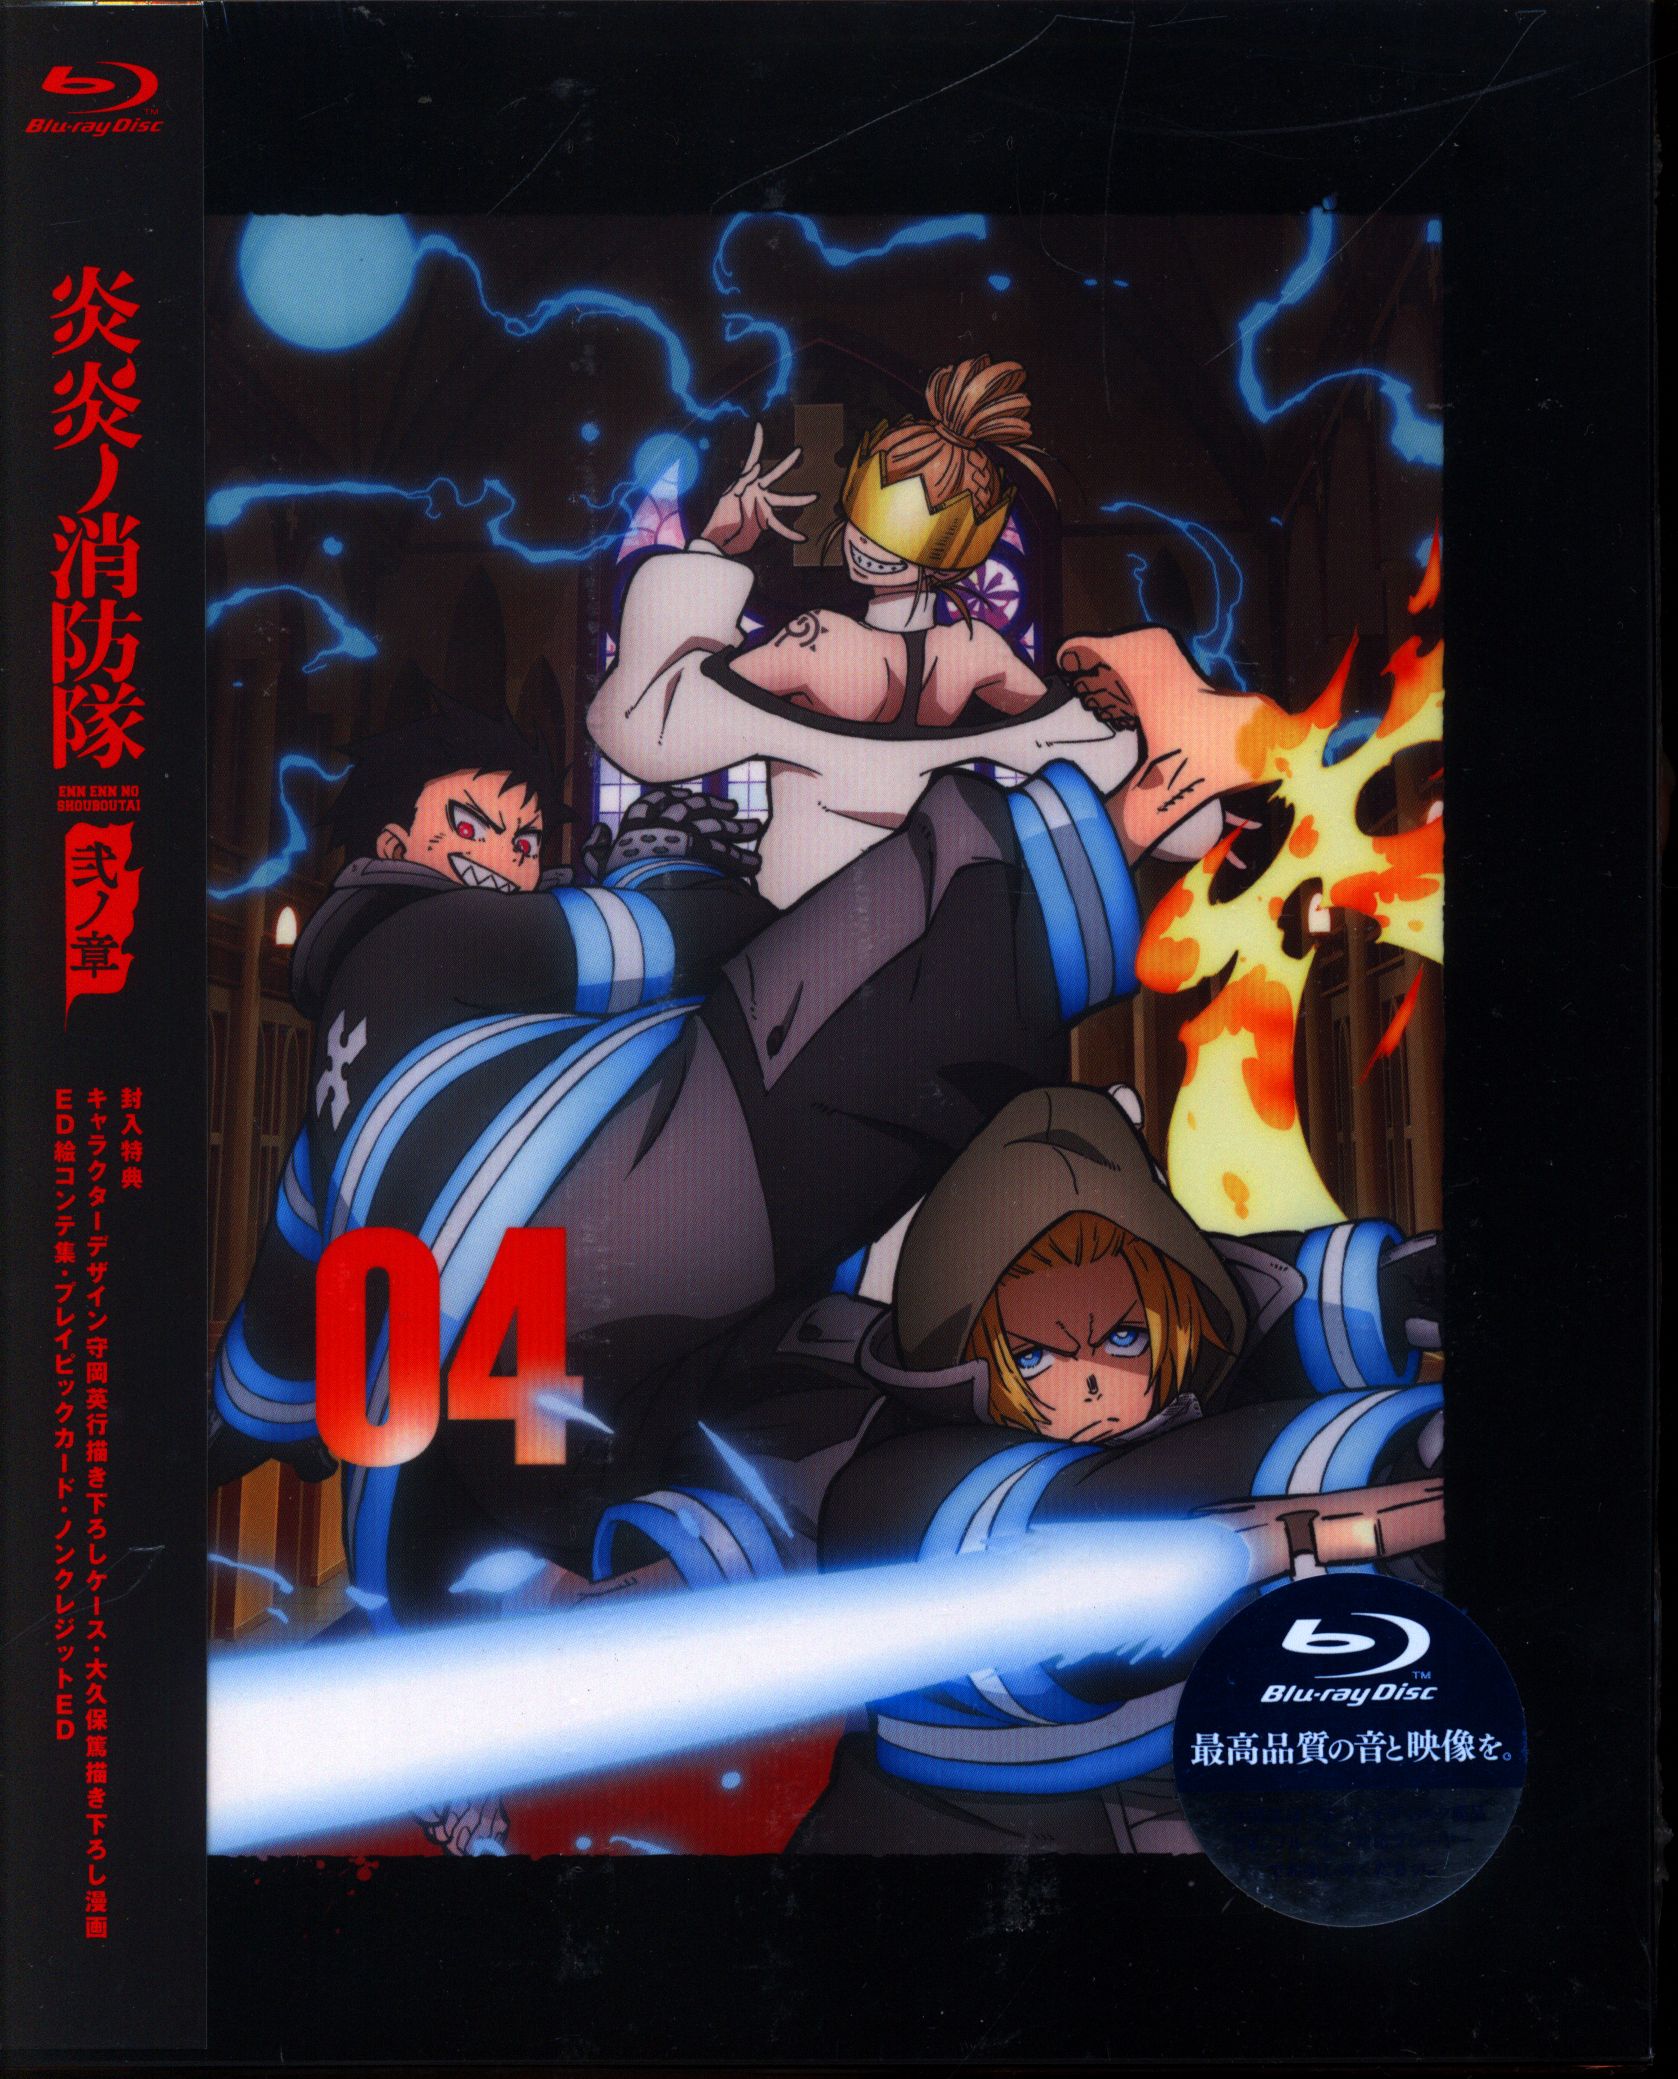 Fire Force Volume 2 (Enen no Shouboutai) - Manga Store 